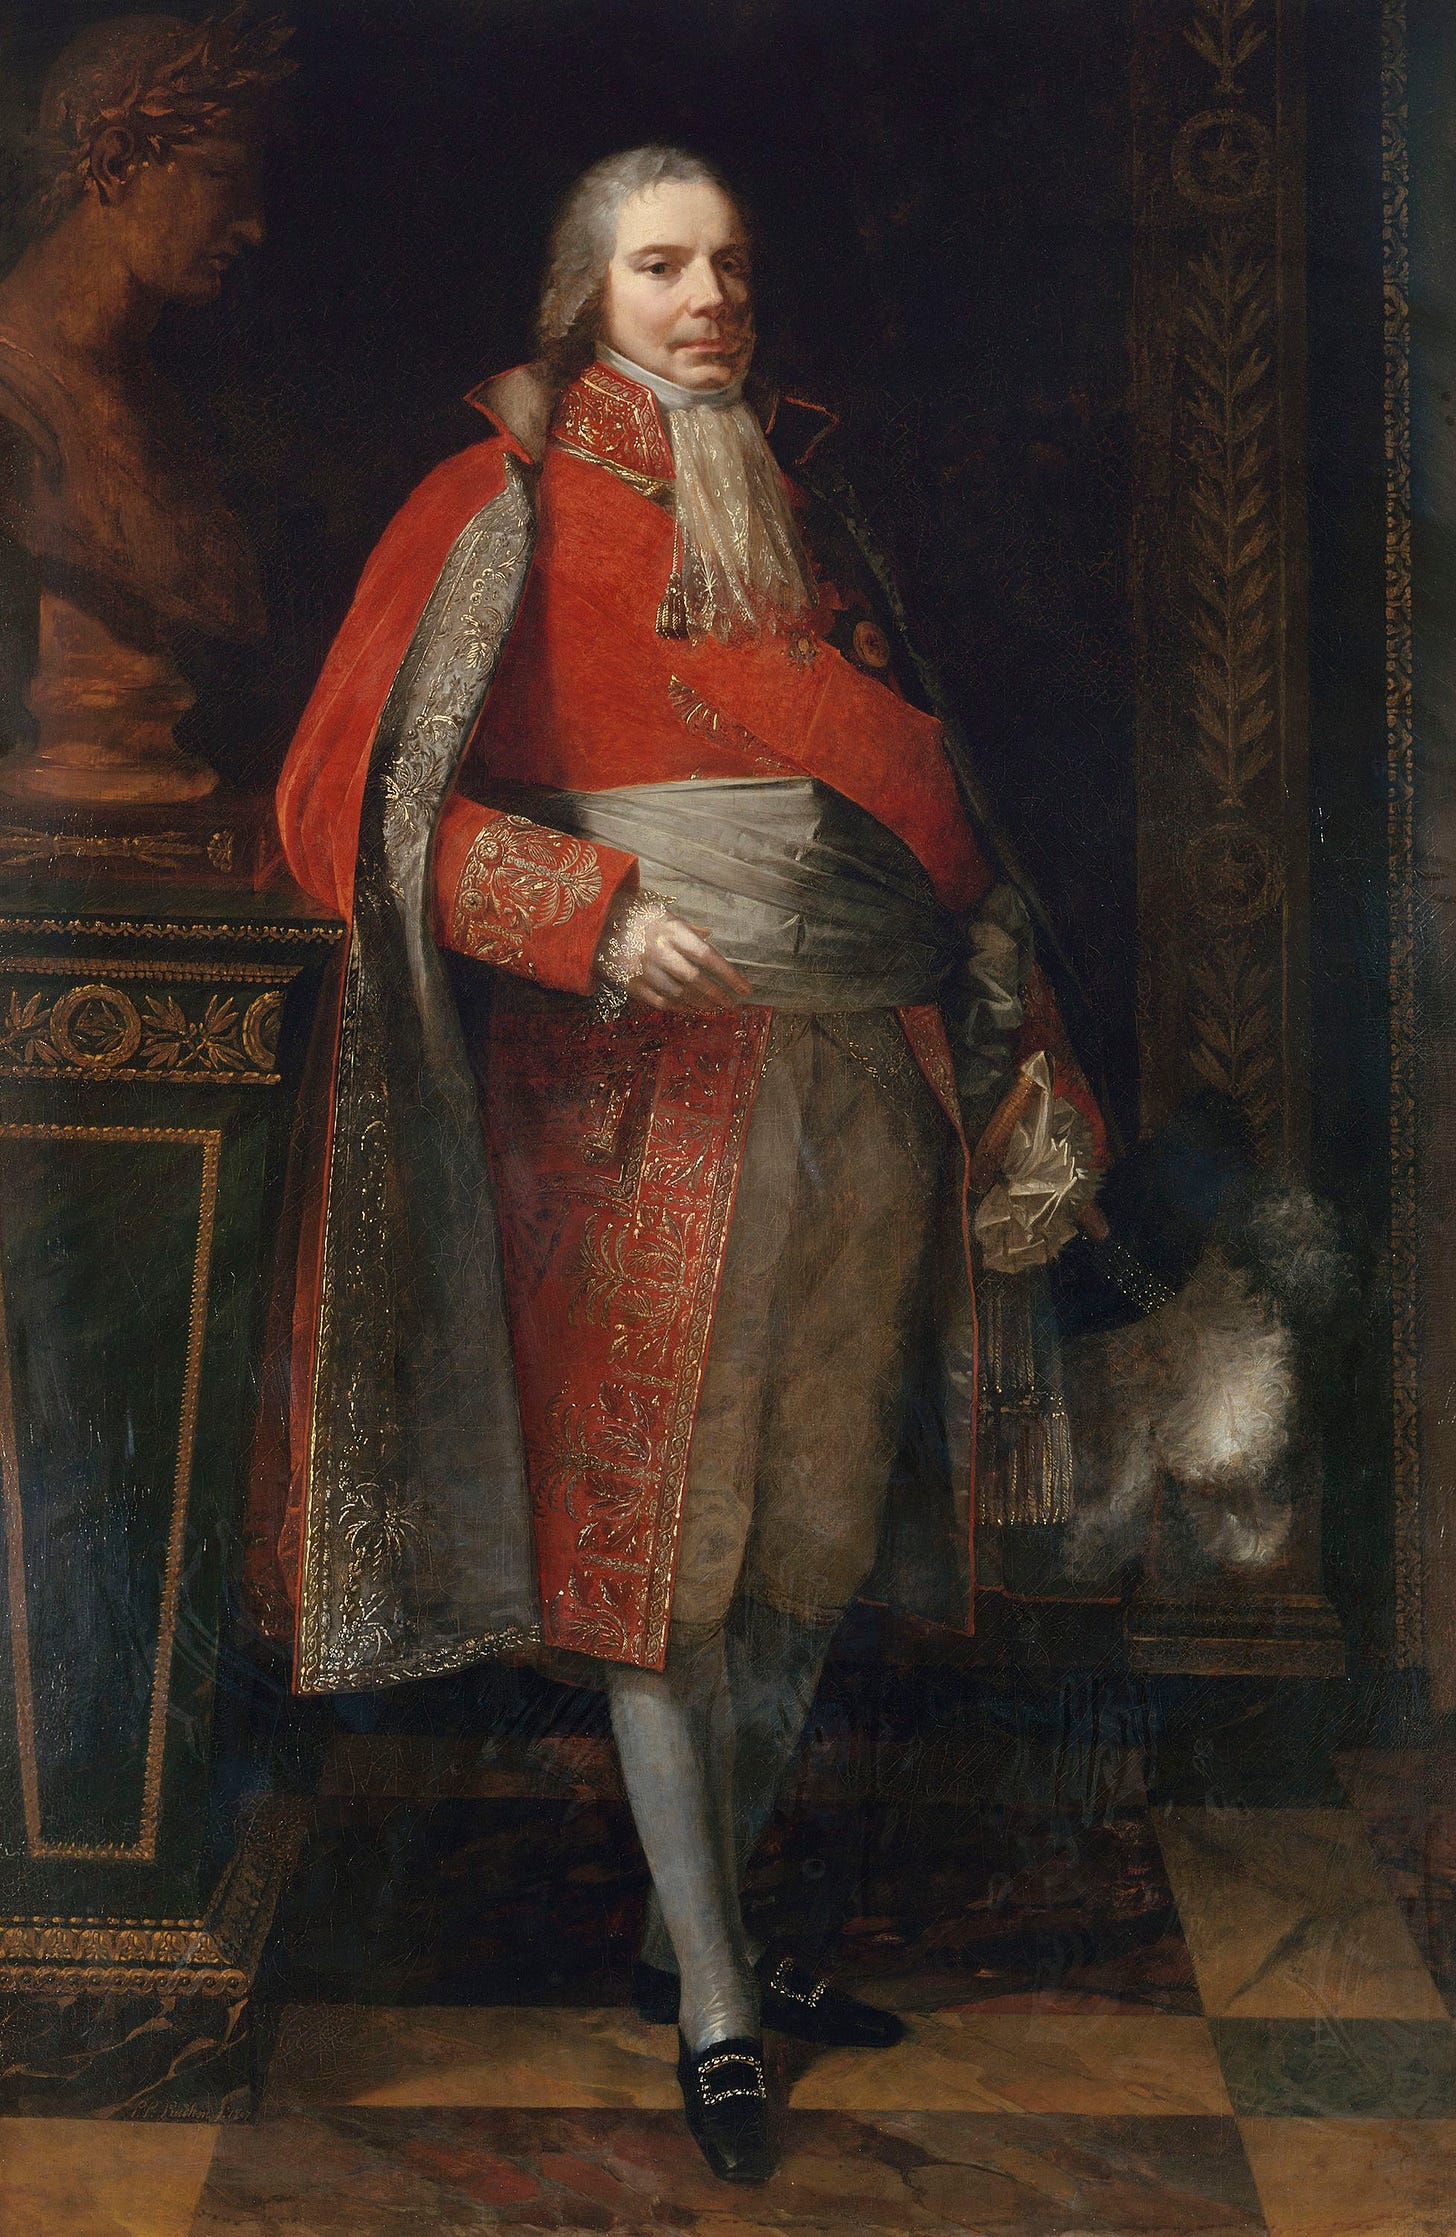 Portrait en pied de Charles Maurice de Talleyrand-Périgord, diplomate français sous la Révolution, l'Empire, la Monarchie